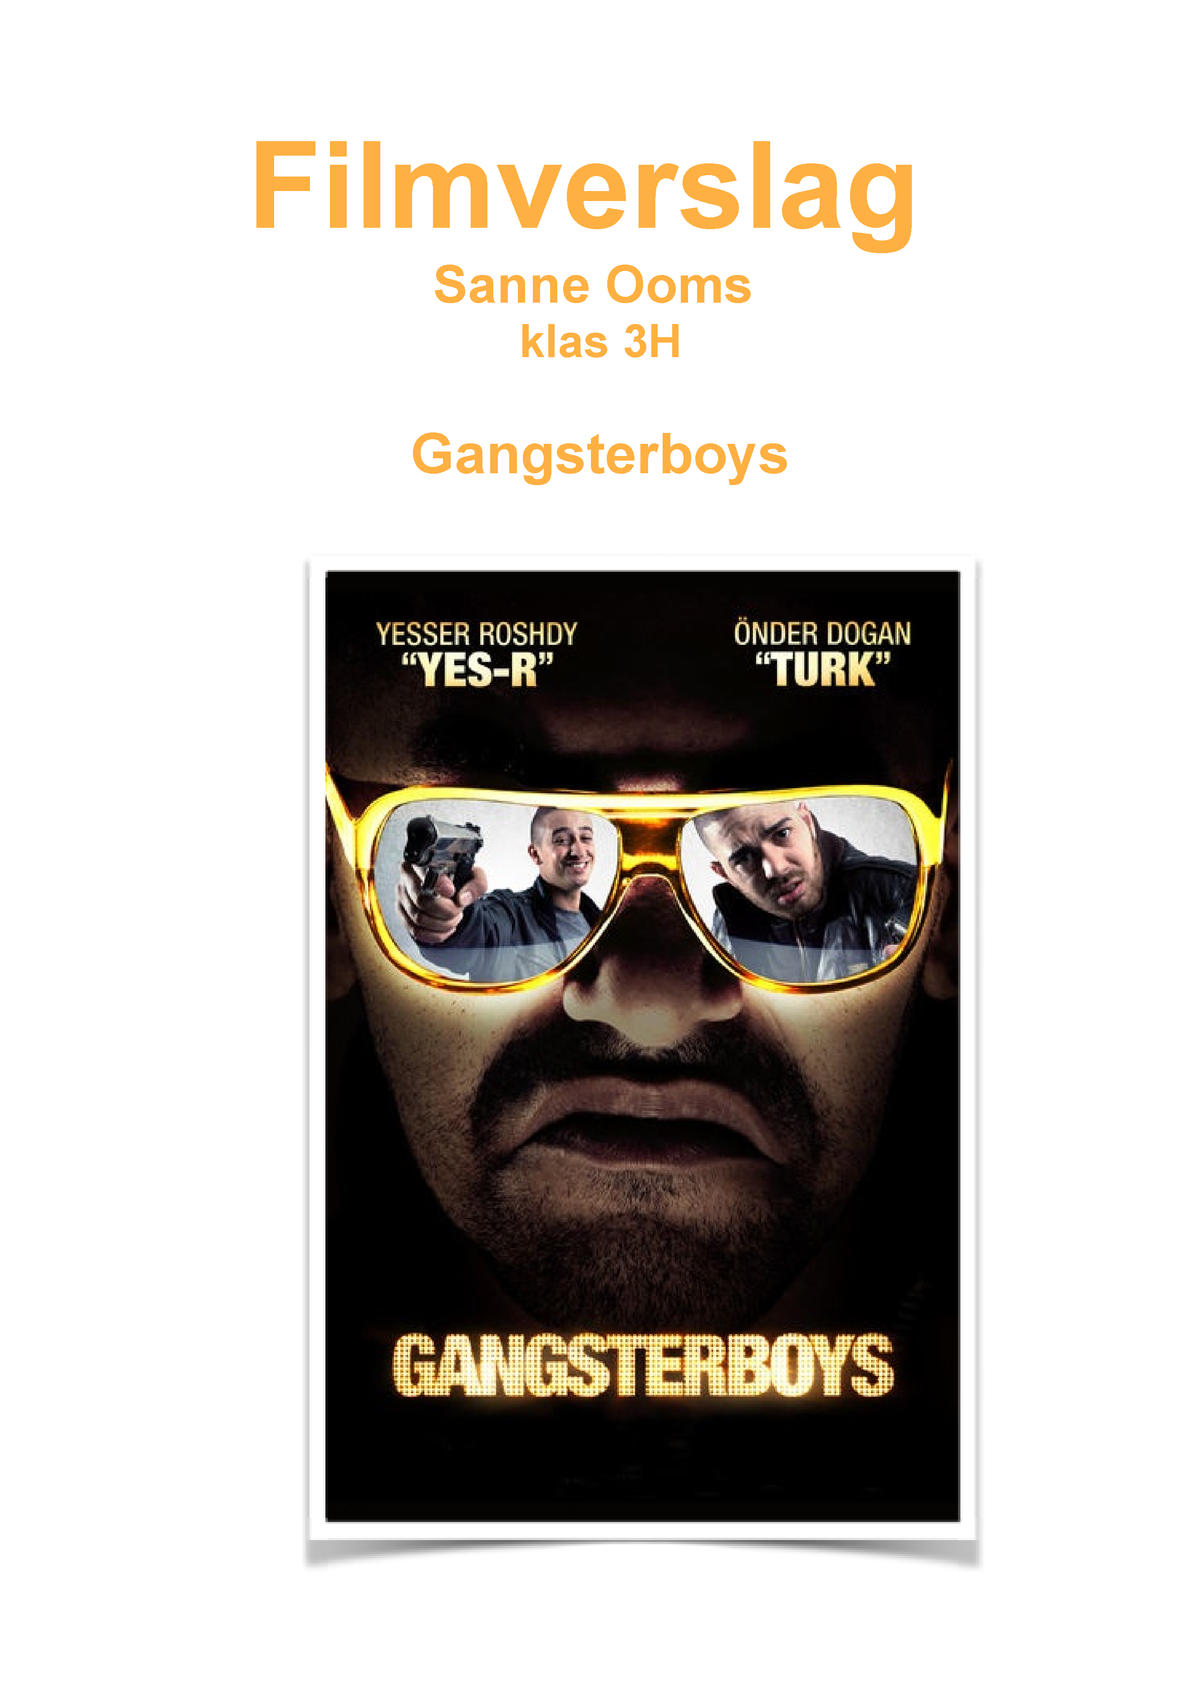 Filmverslag - Filmverslag Sanne Ooms klas 3H Gangsterboys 1 ...